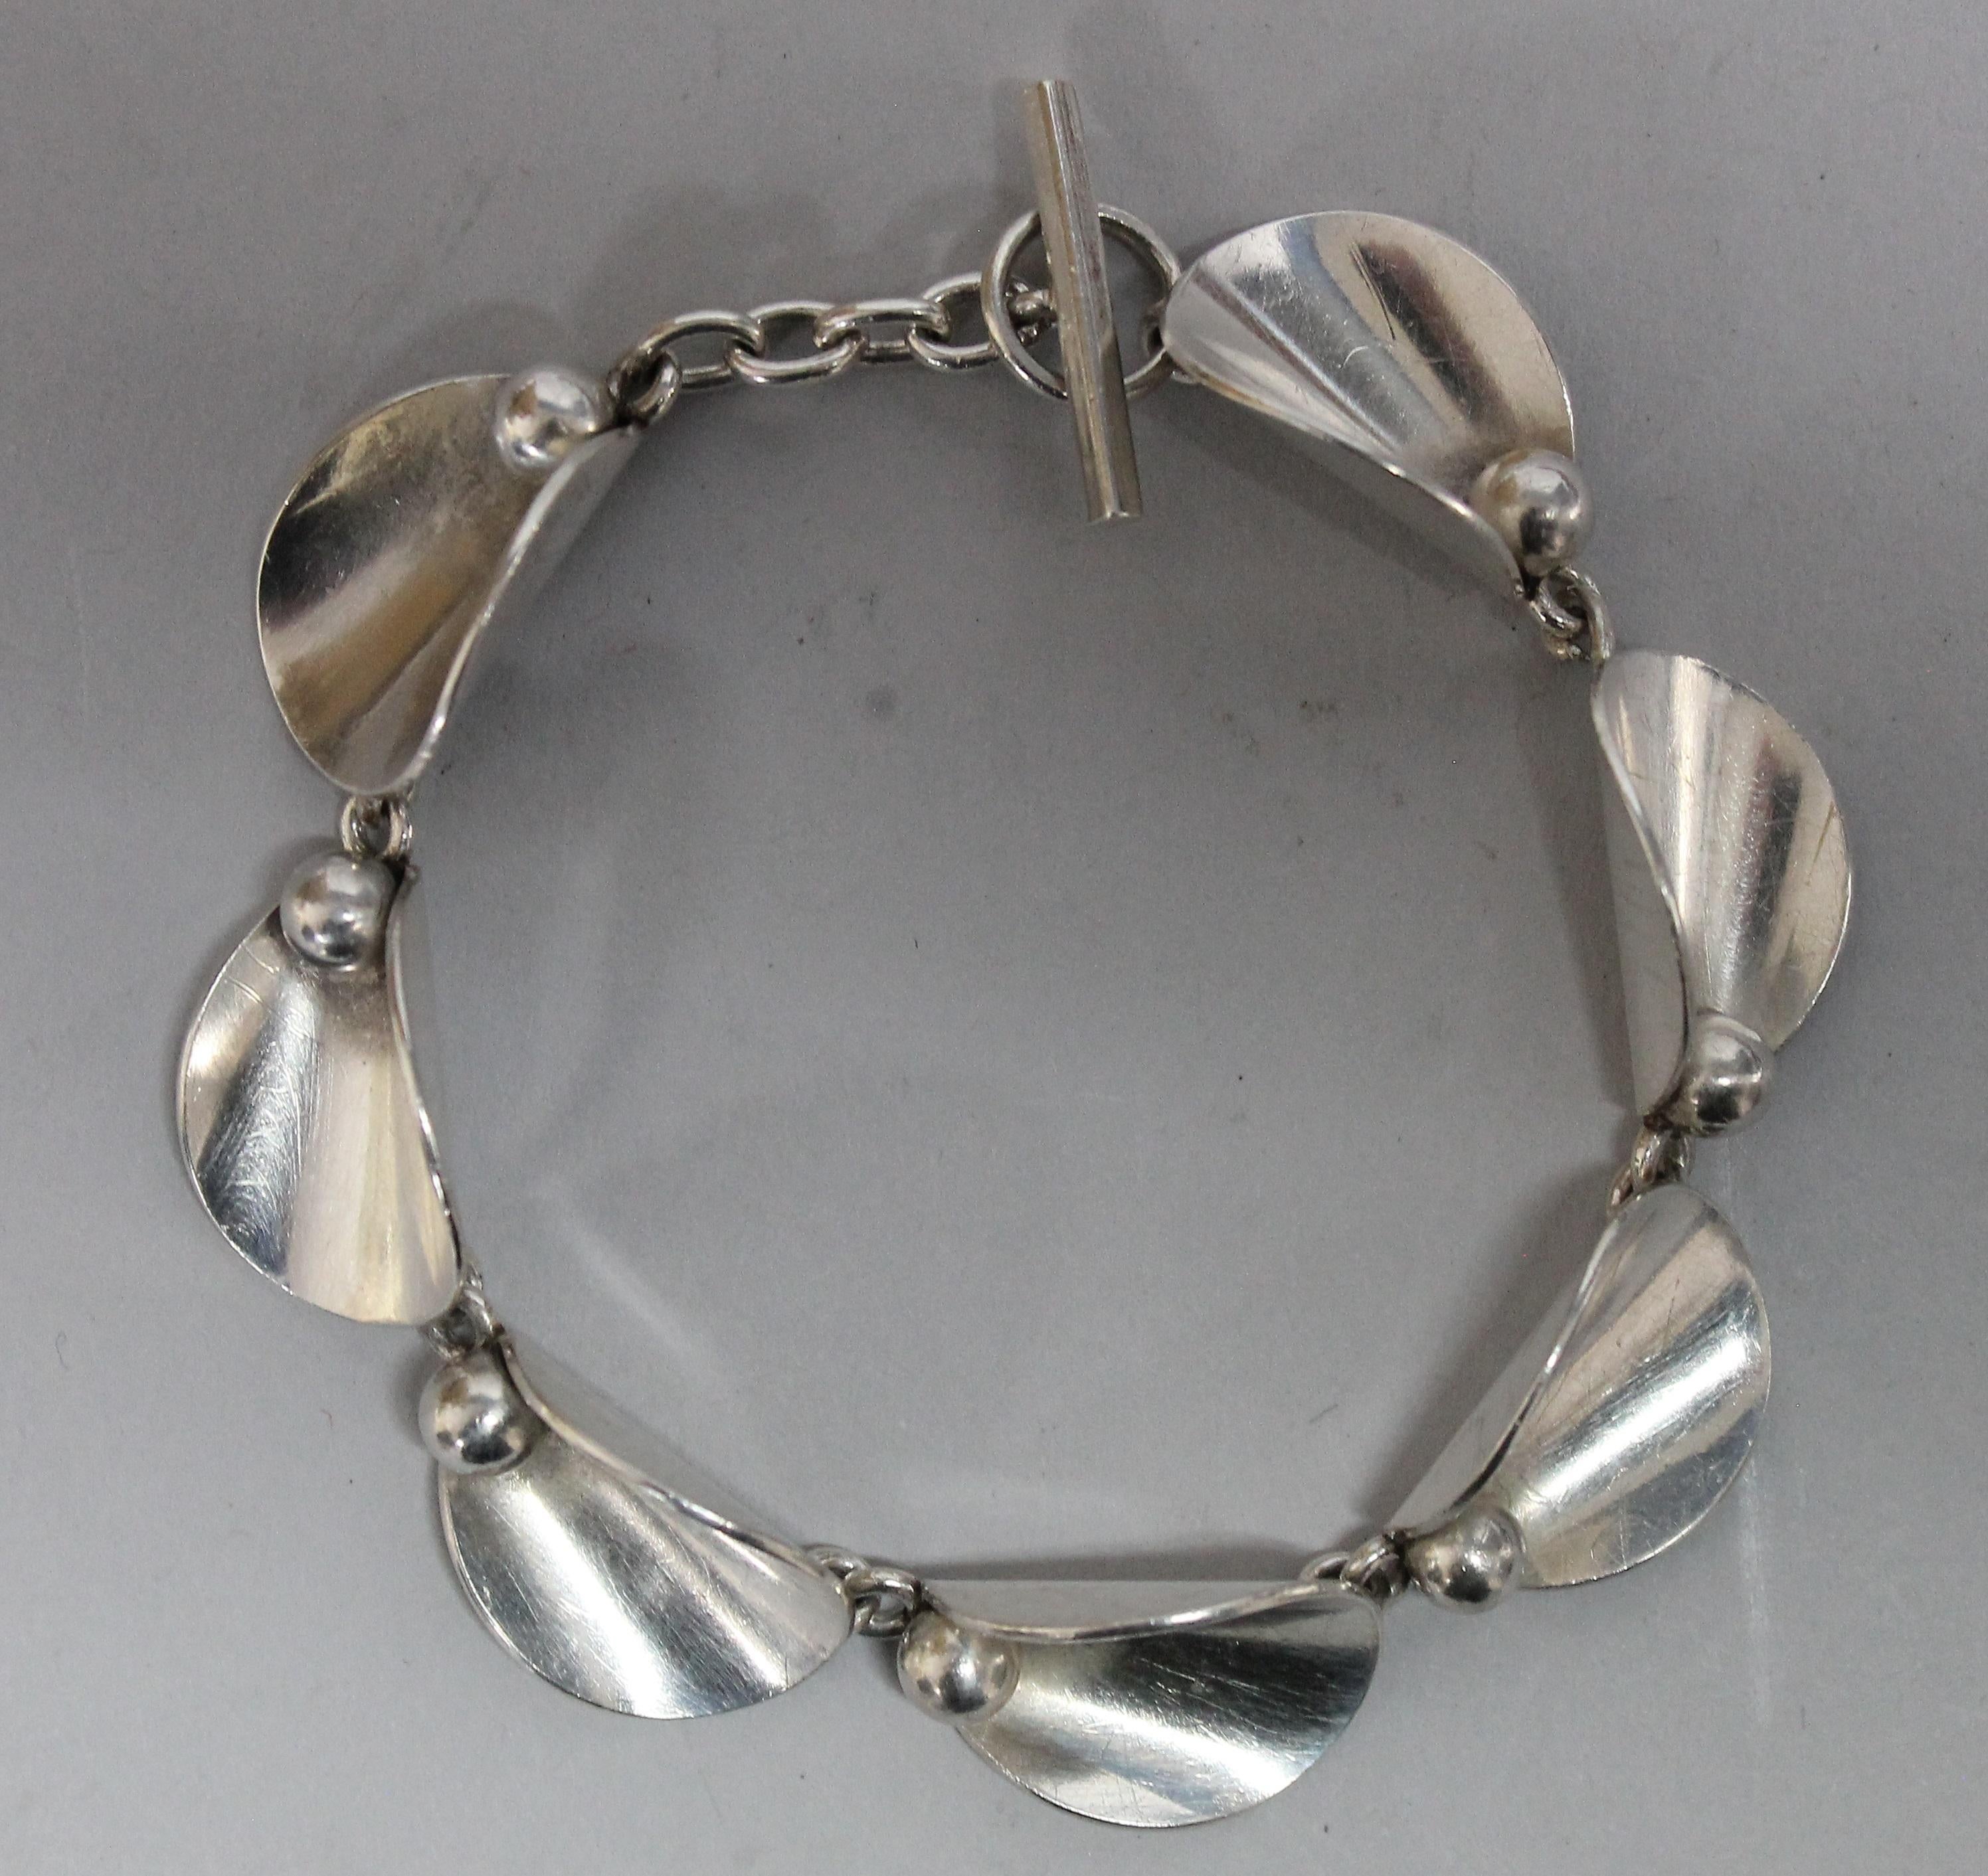 Women's or Men's Hugo Grun Modernist Bracelet, Denmark 1930s Sterling Silver